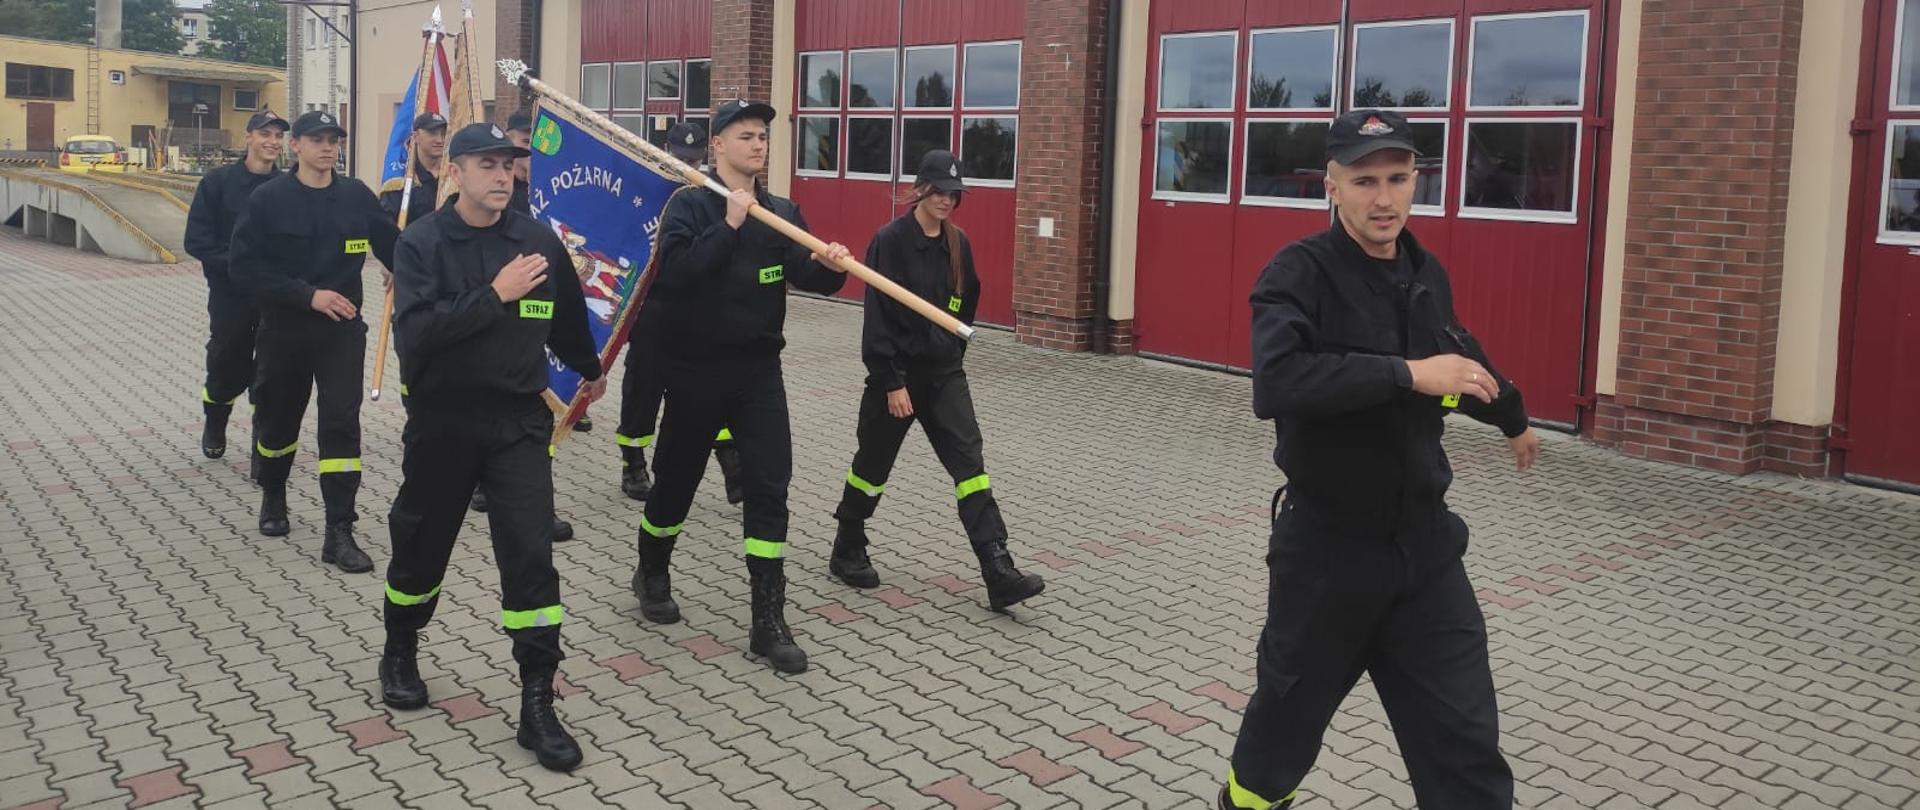 Strażacy z sztandarami ćwiczą prawidłowe zachowanie podczas musztry